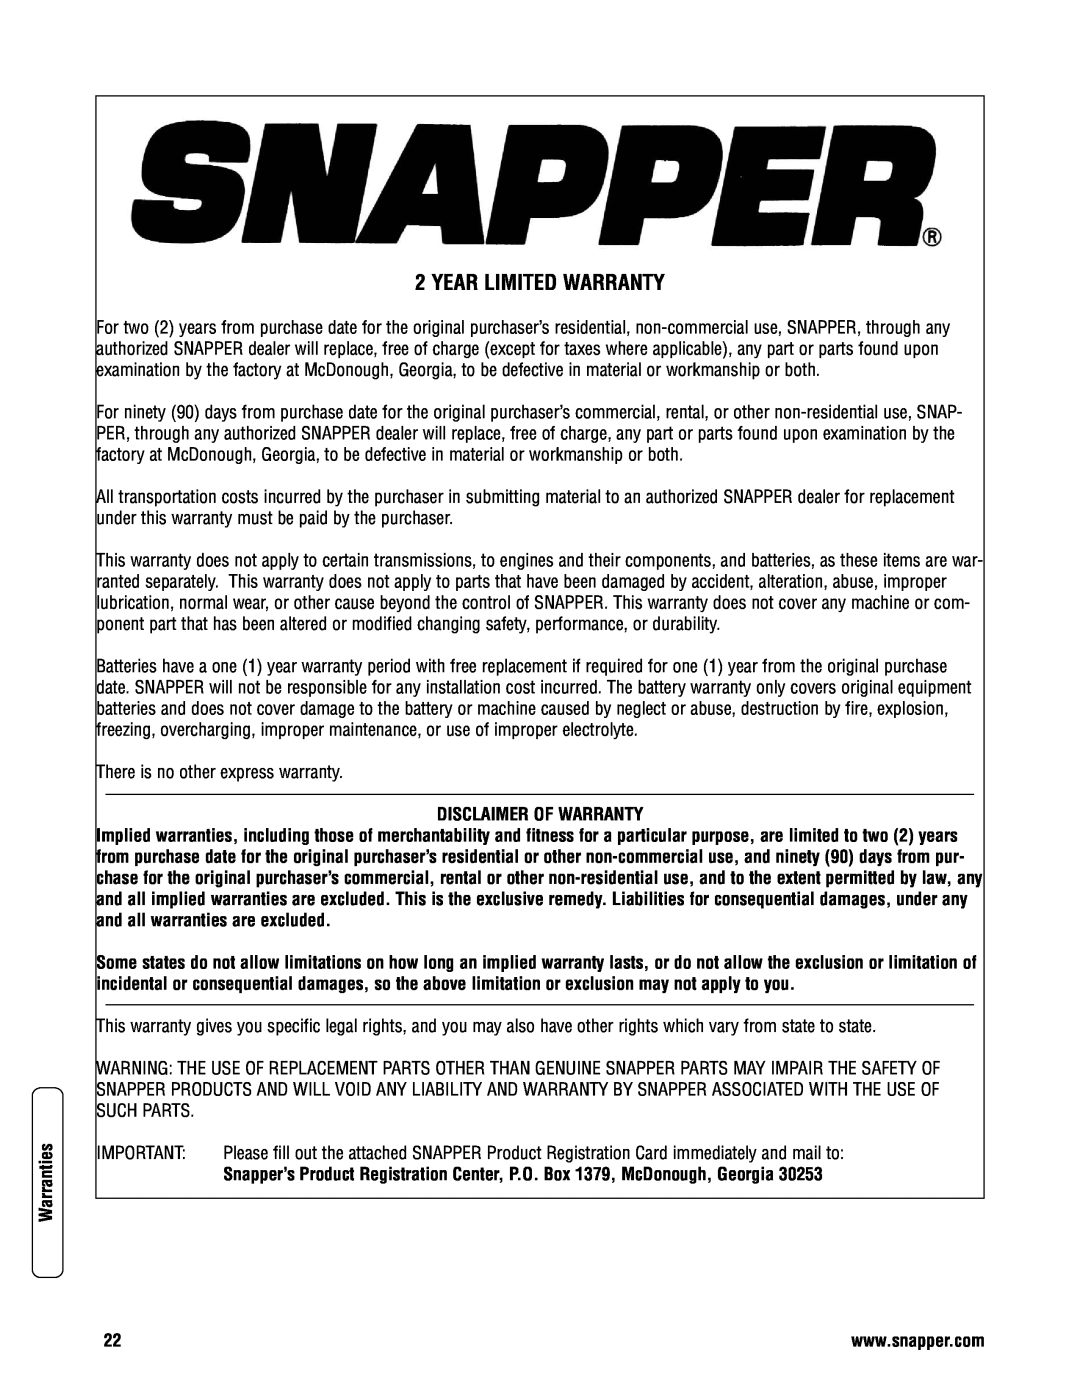 Snapper 2167519B specifications Year Limited Warranty, Disclaimer Of Warranty, Warranties 